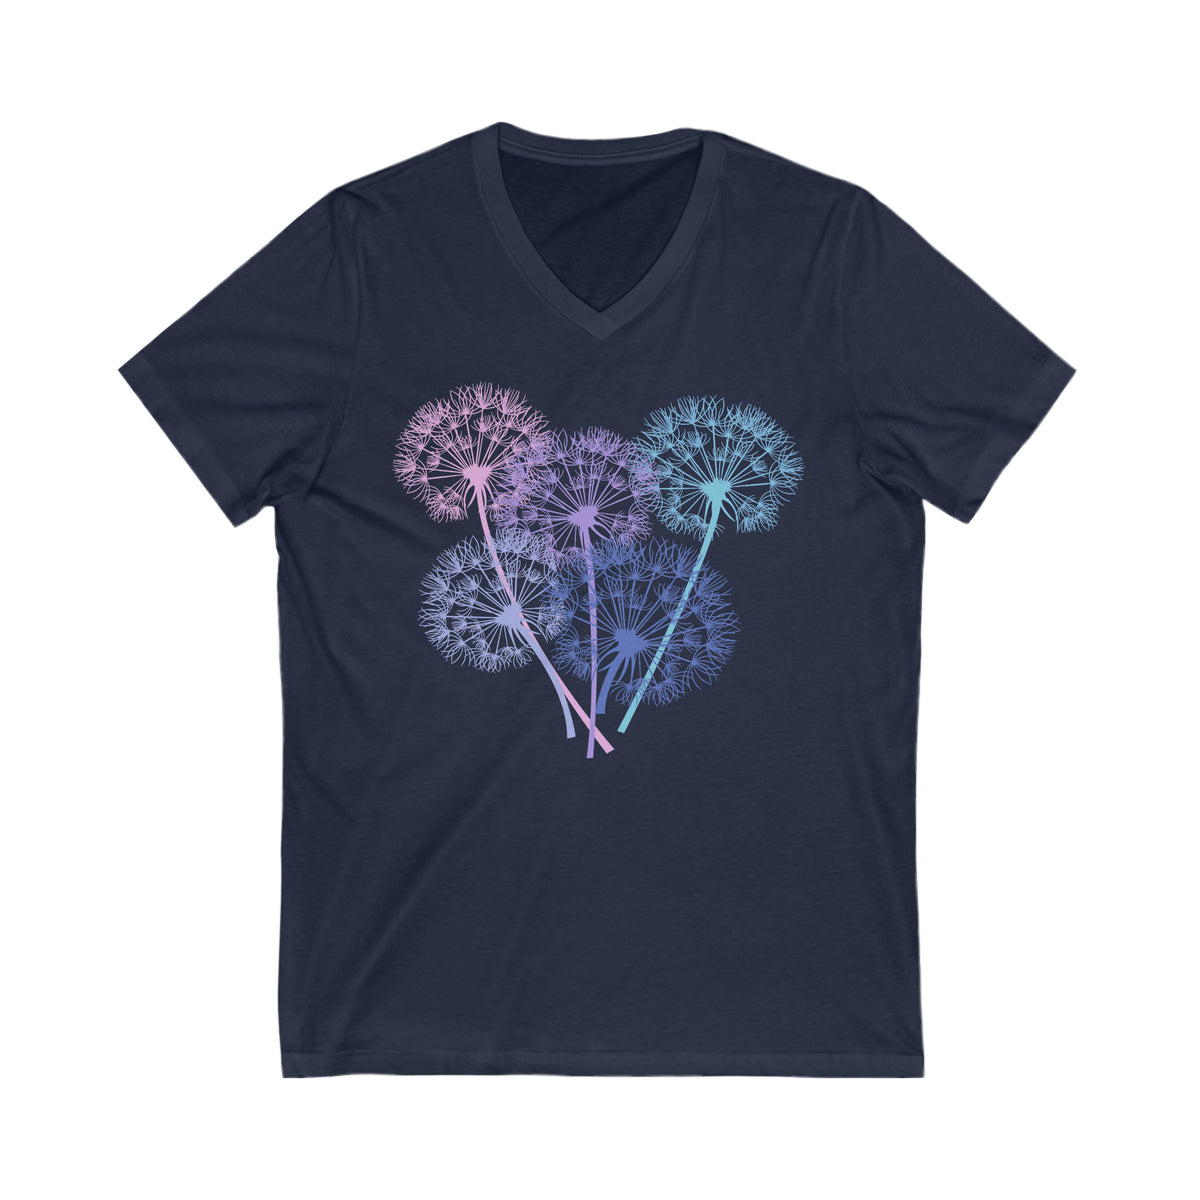 Dandelion Seeds Garden Aesthetic Shirt | Plant Lover Gift | Unisex V-neck T-shirt